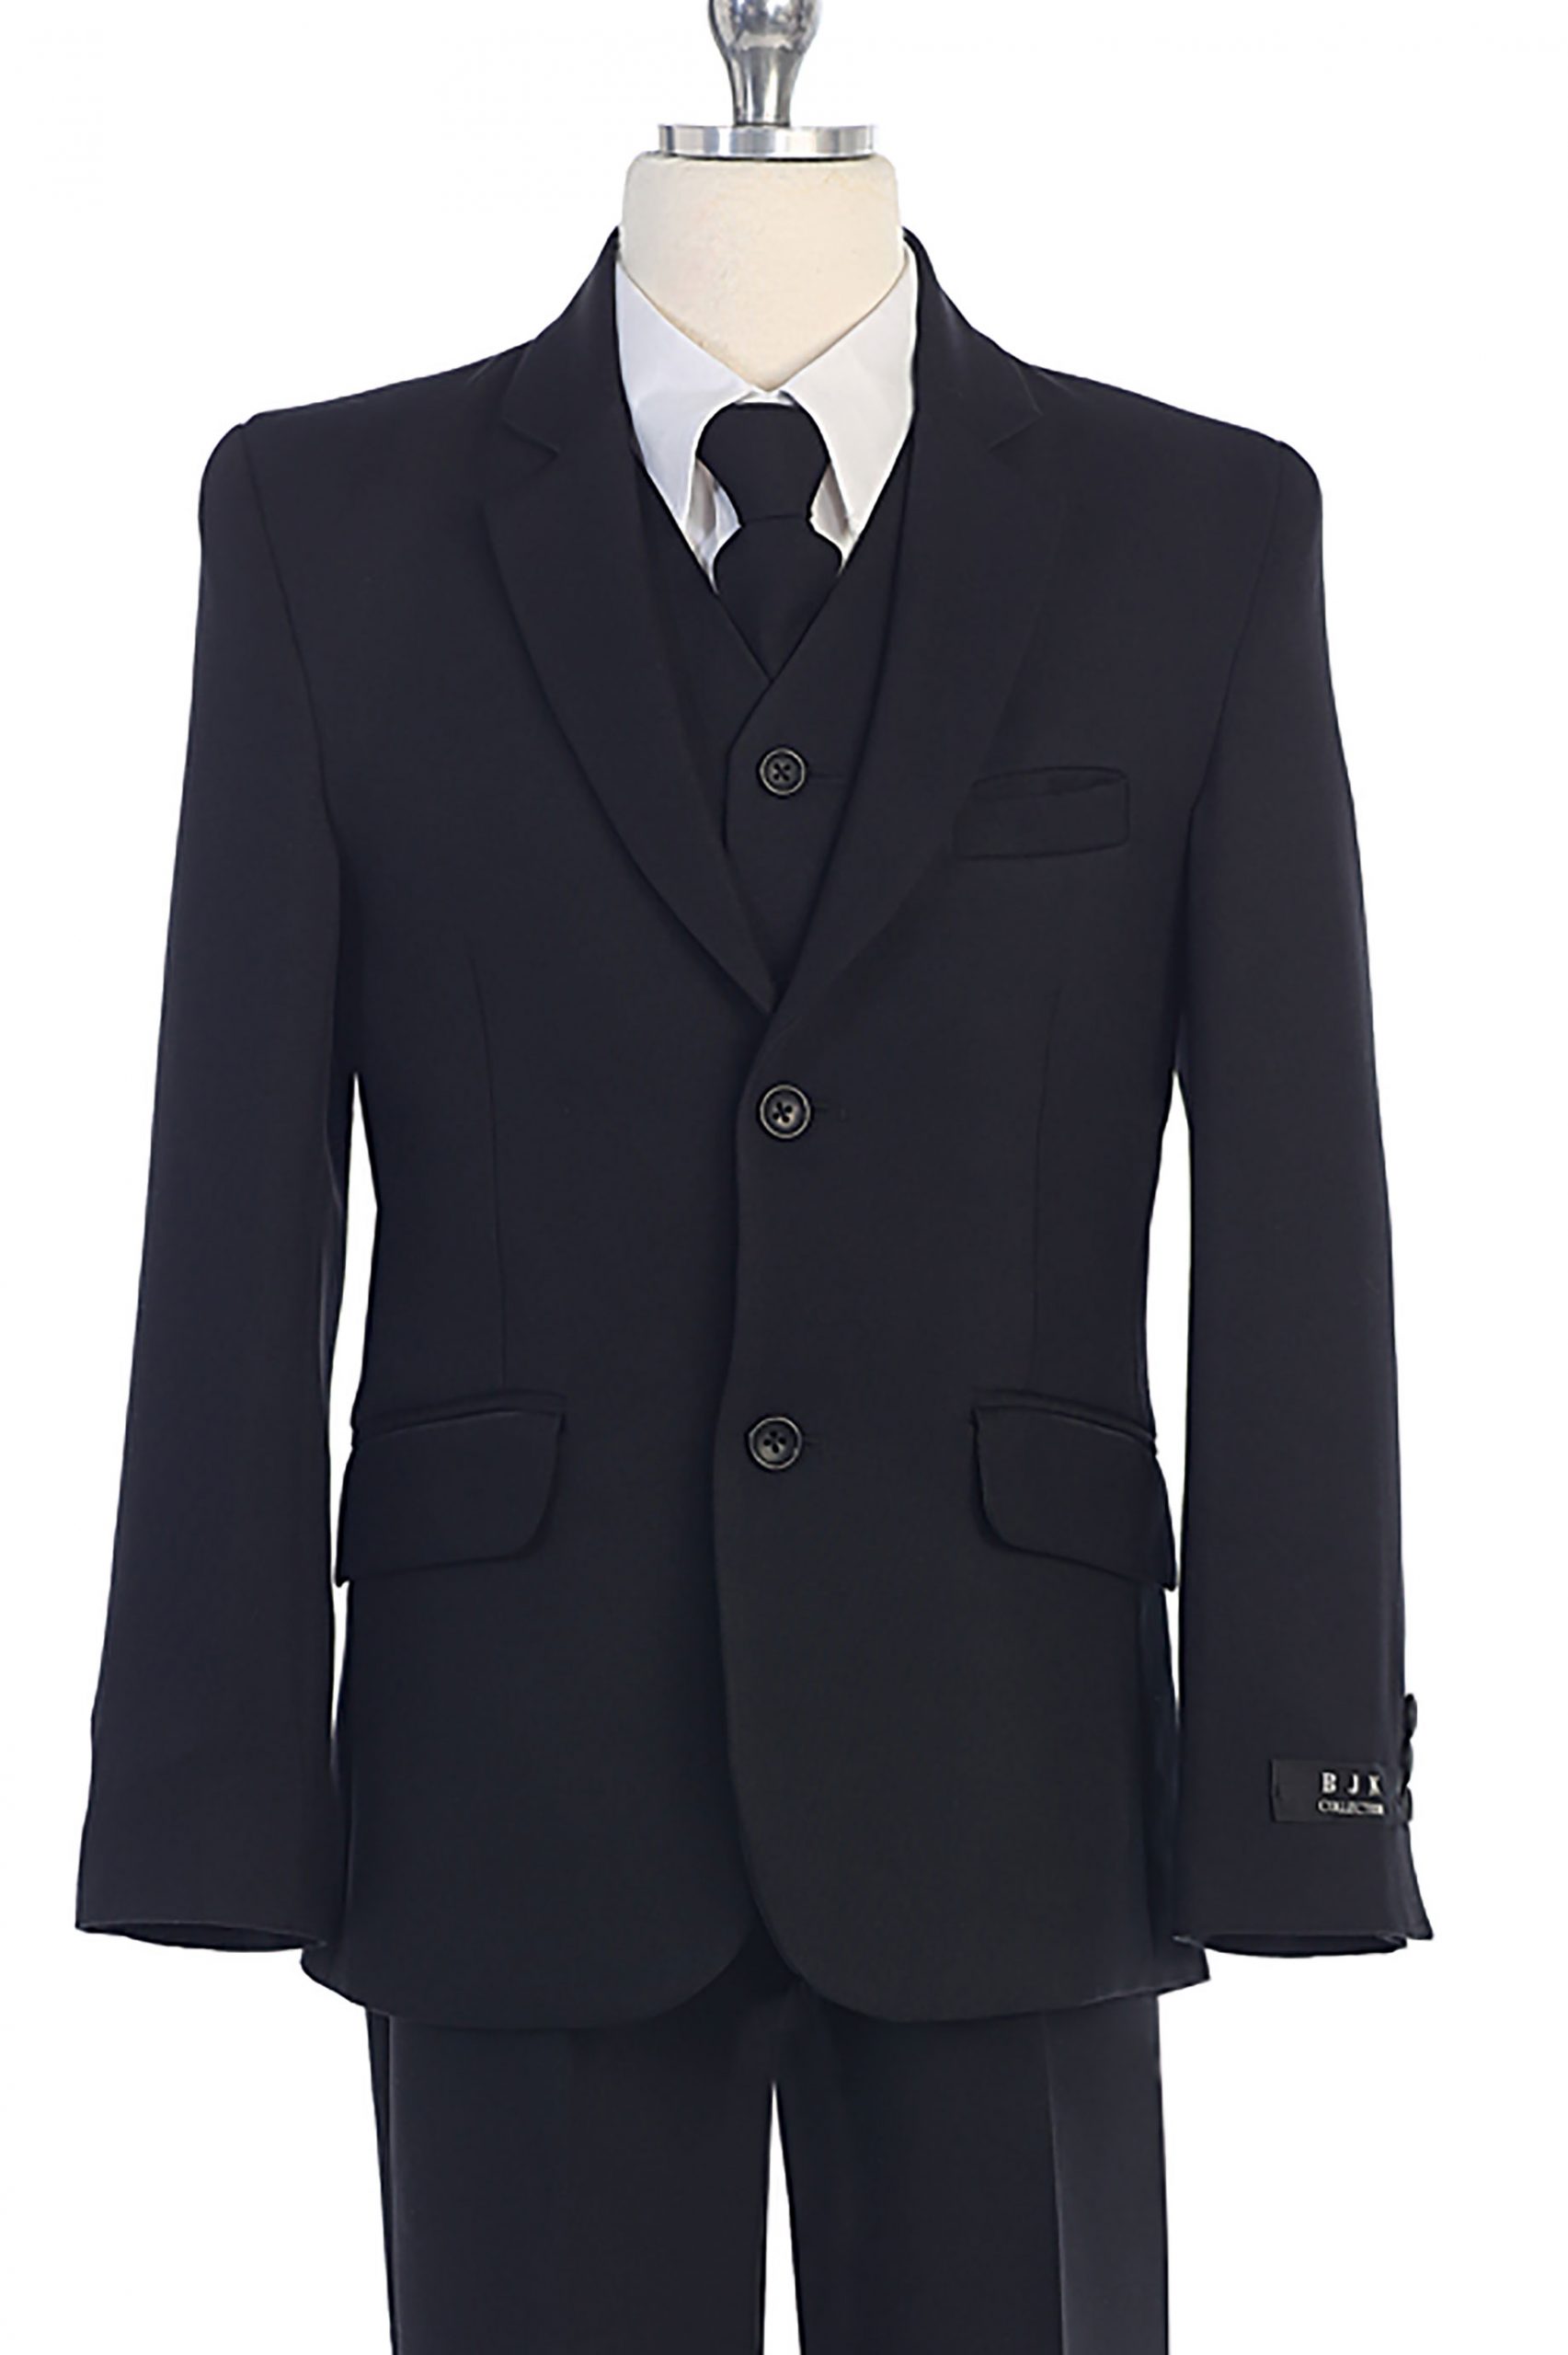 BJ5005-1 Classic black suit by the BOX(26pcs) - BijanKids